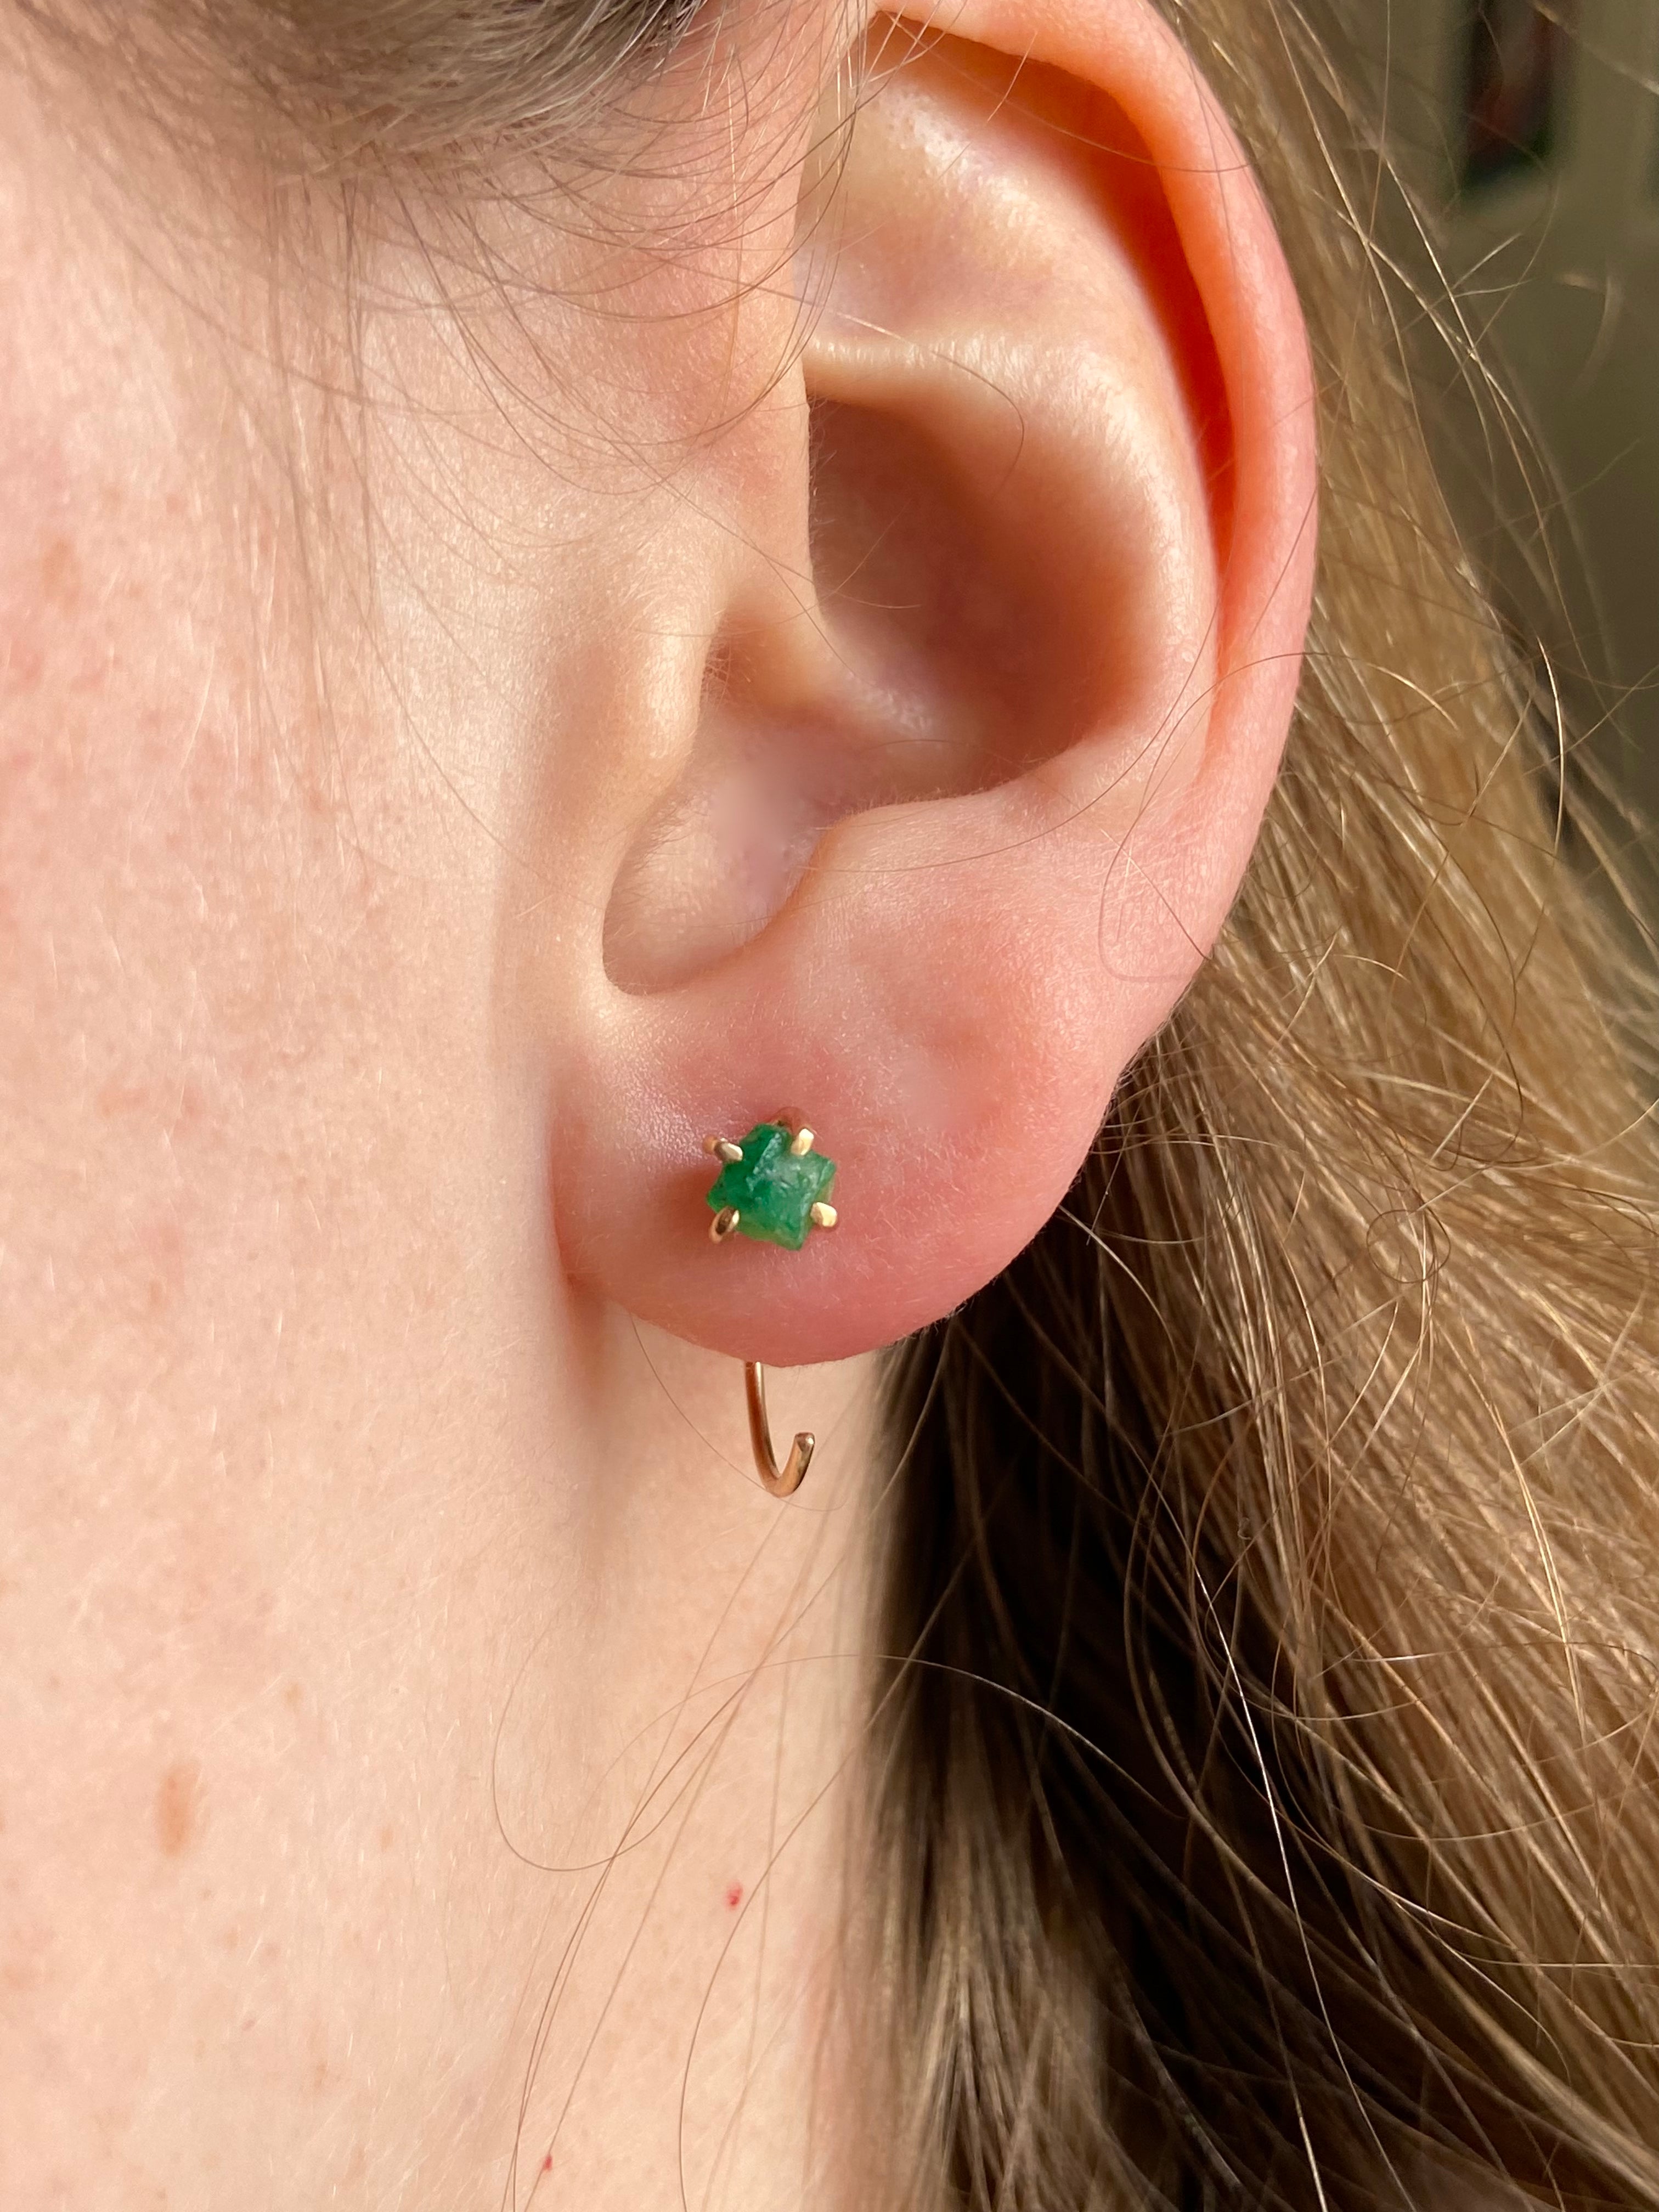 Emerald Huggie Stud Earrings, May Birthstone Earrings